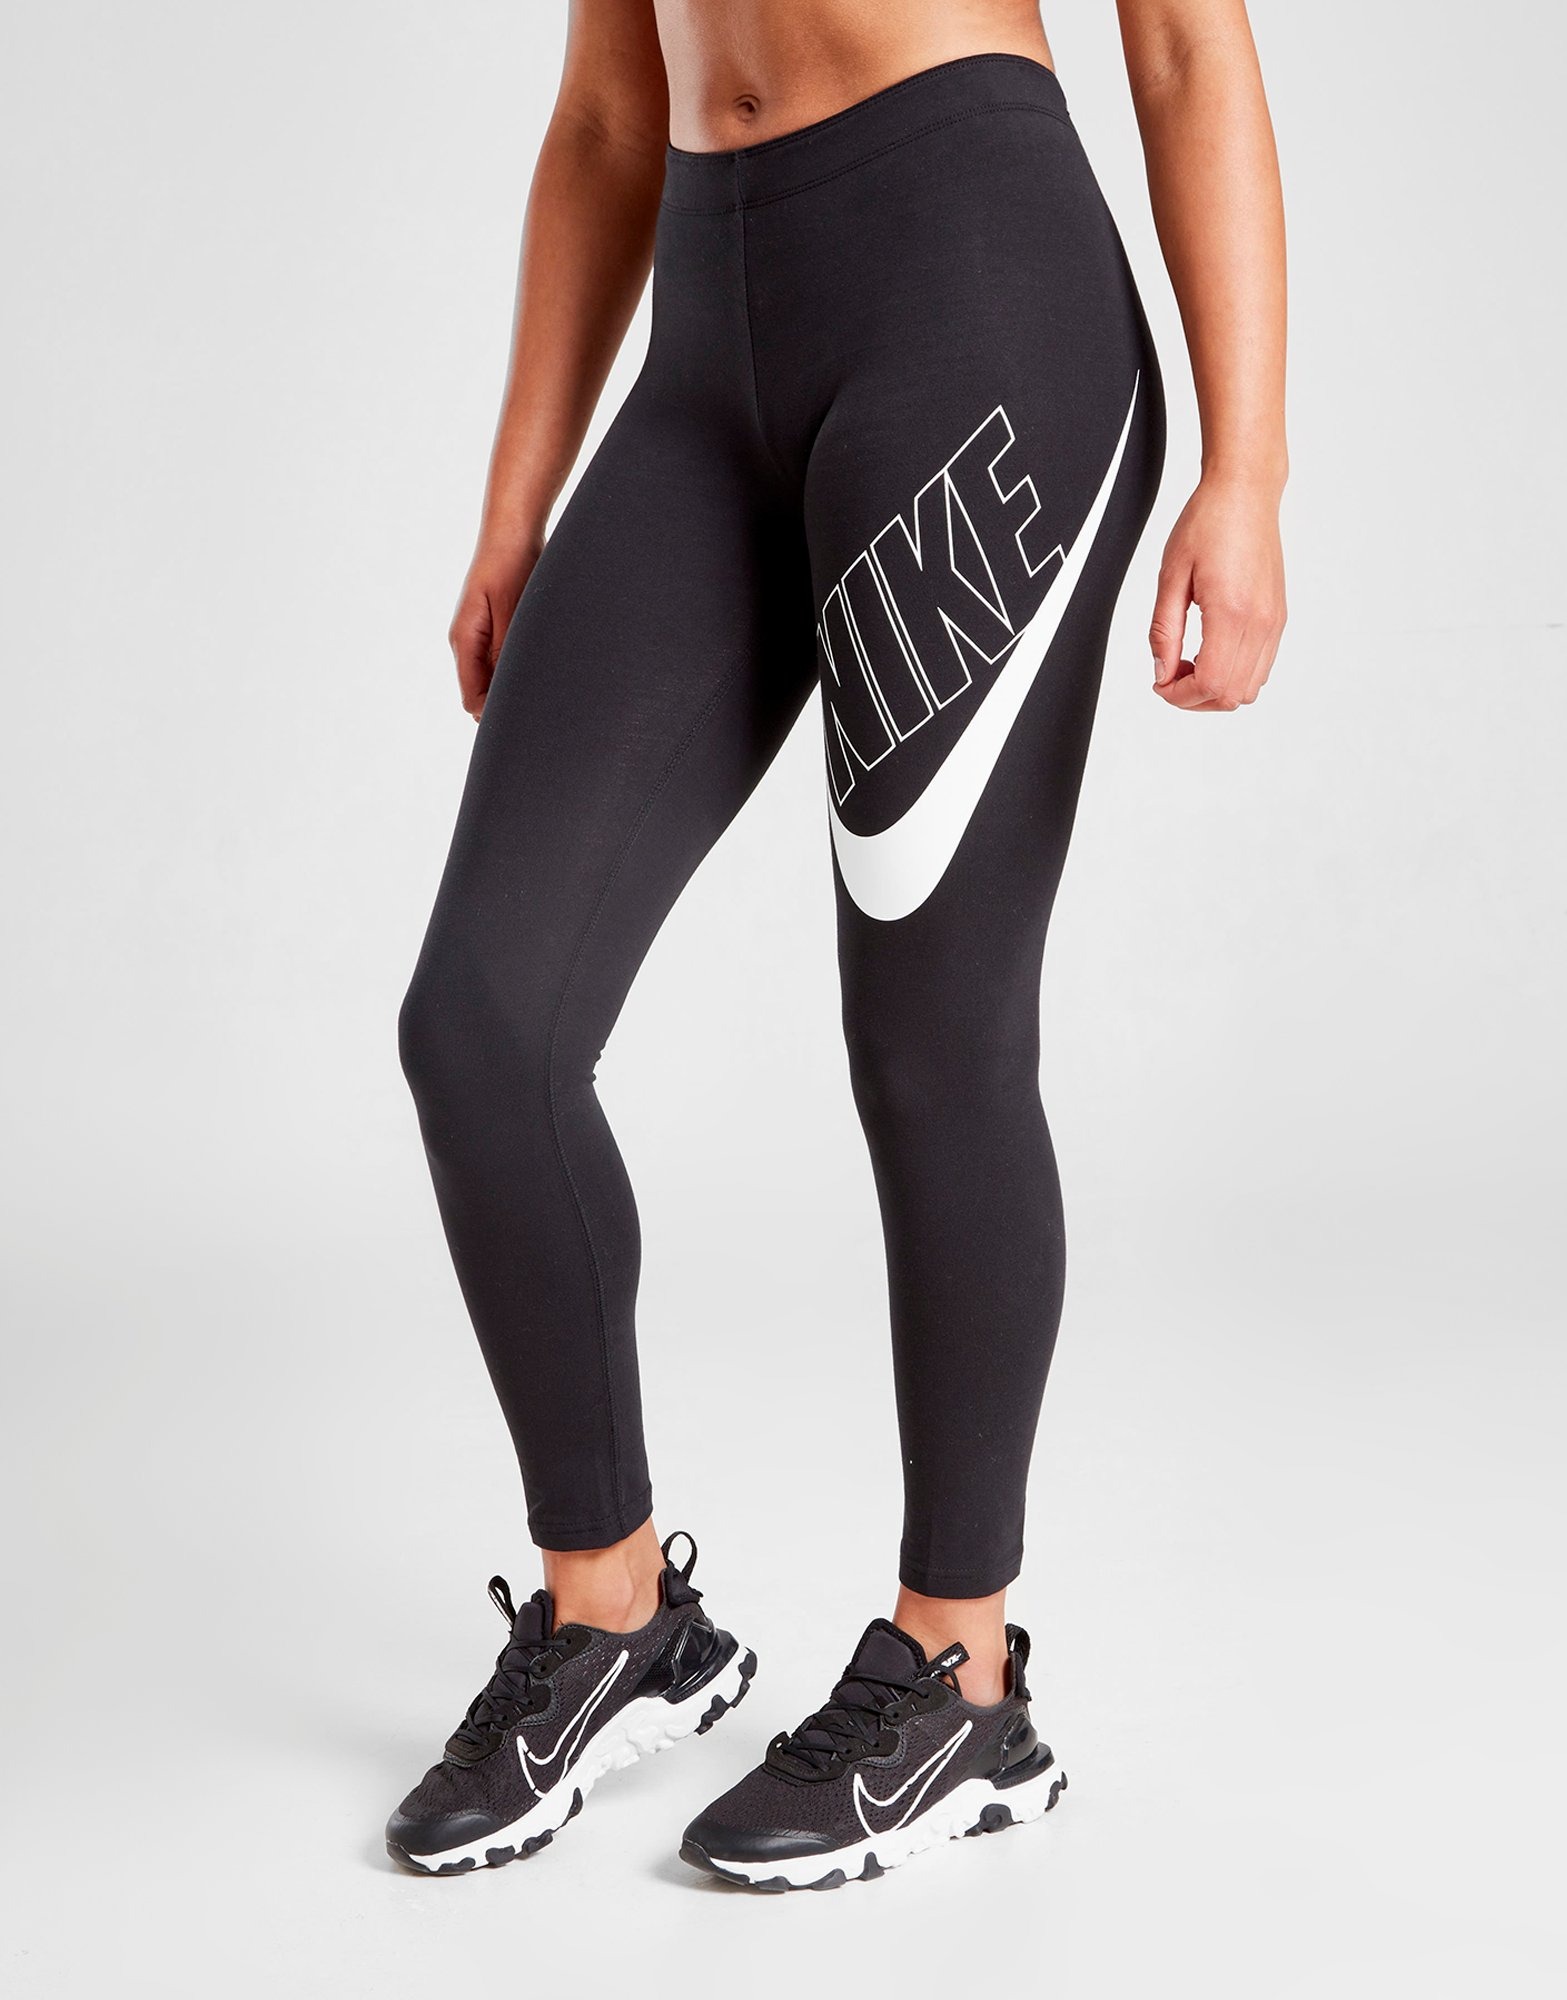 TNNZEET 3 Pack High Waisted Leggings for Women - Buttery Soft Workout  Running Yoga Pants